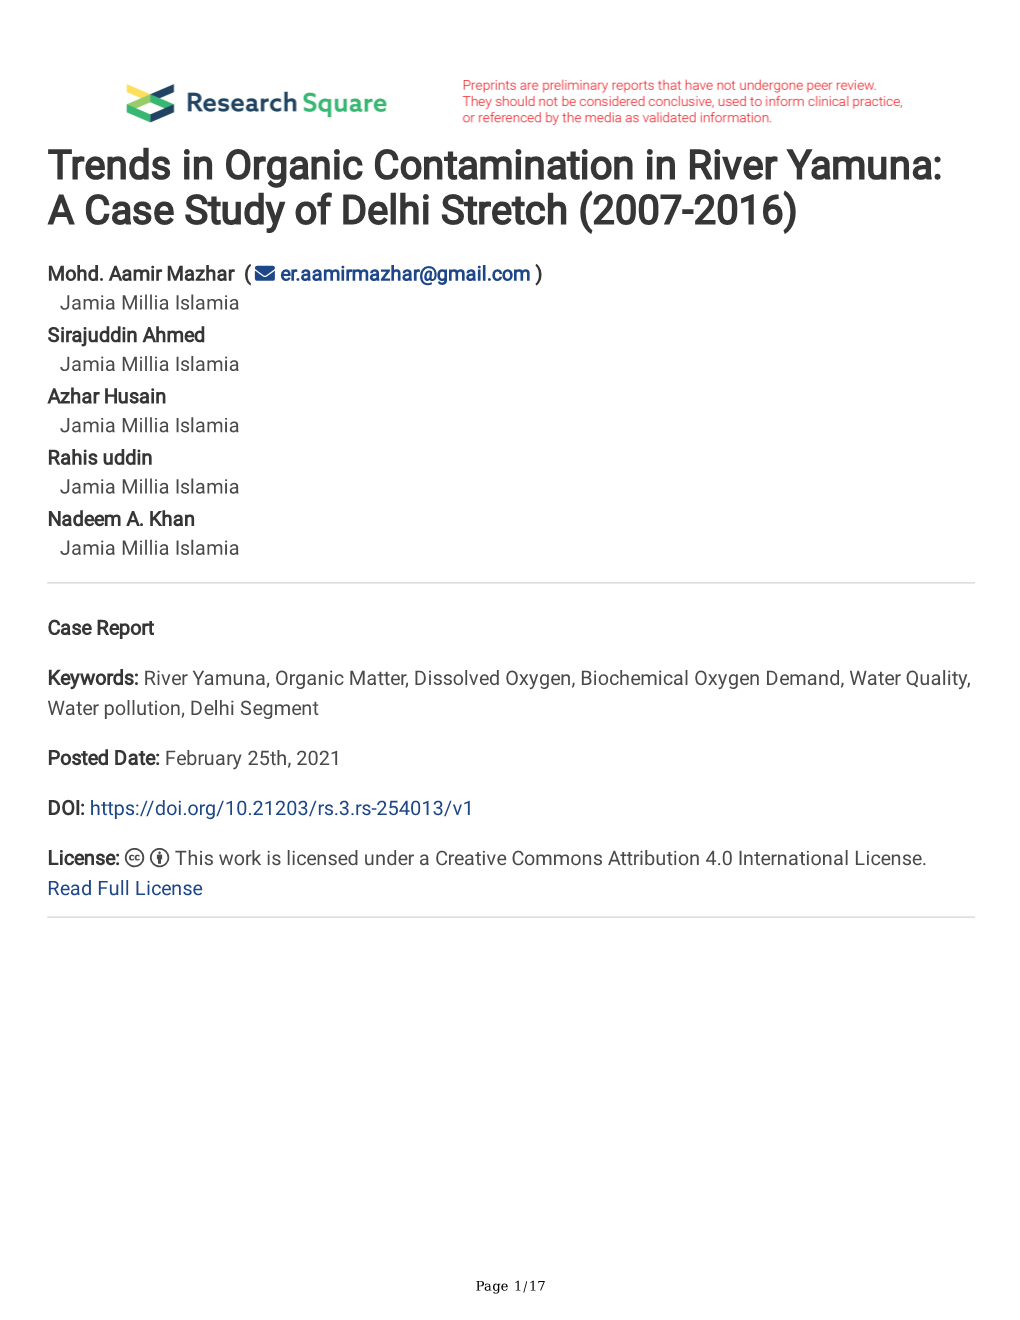 Trends in Organic Contamination in River Yamuna: a Case Study of Delhi Stretch (2007-2016)